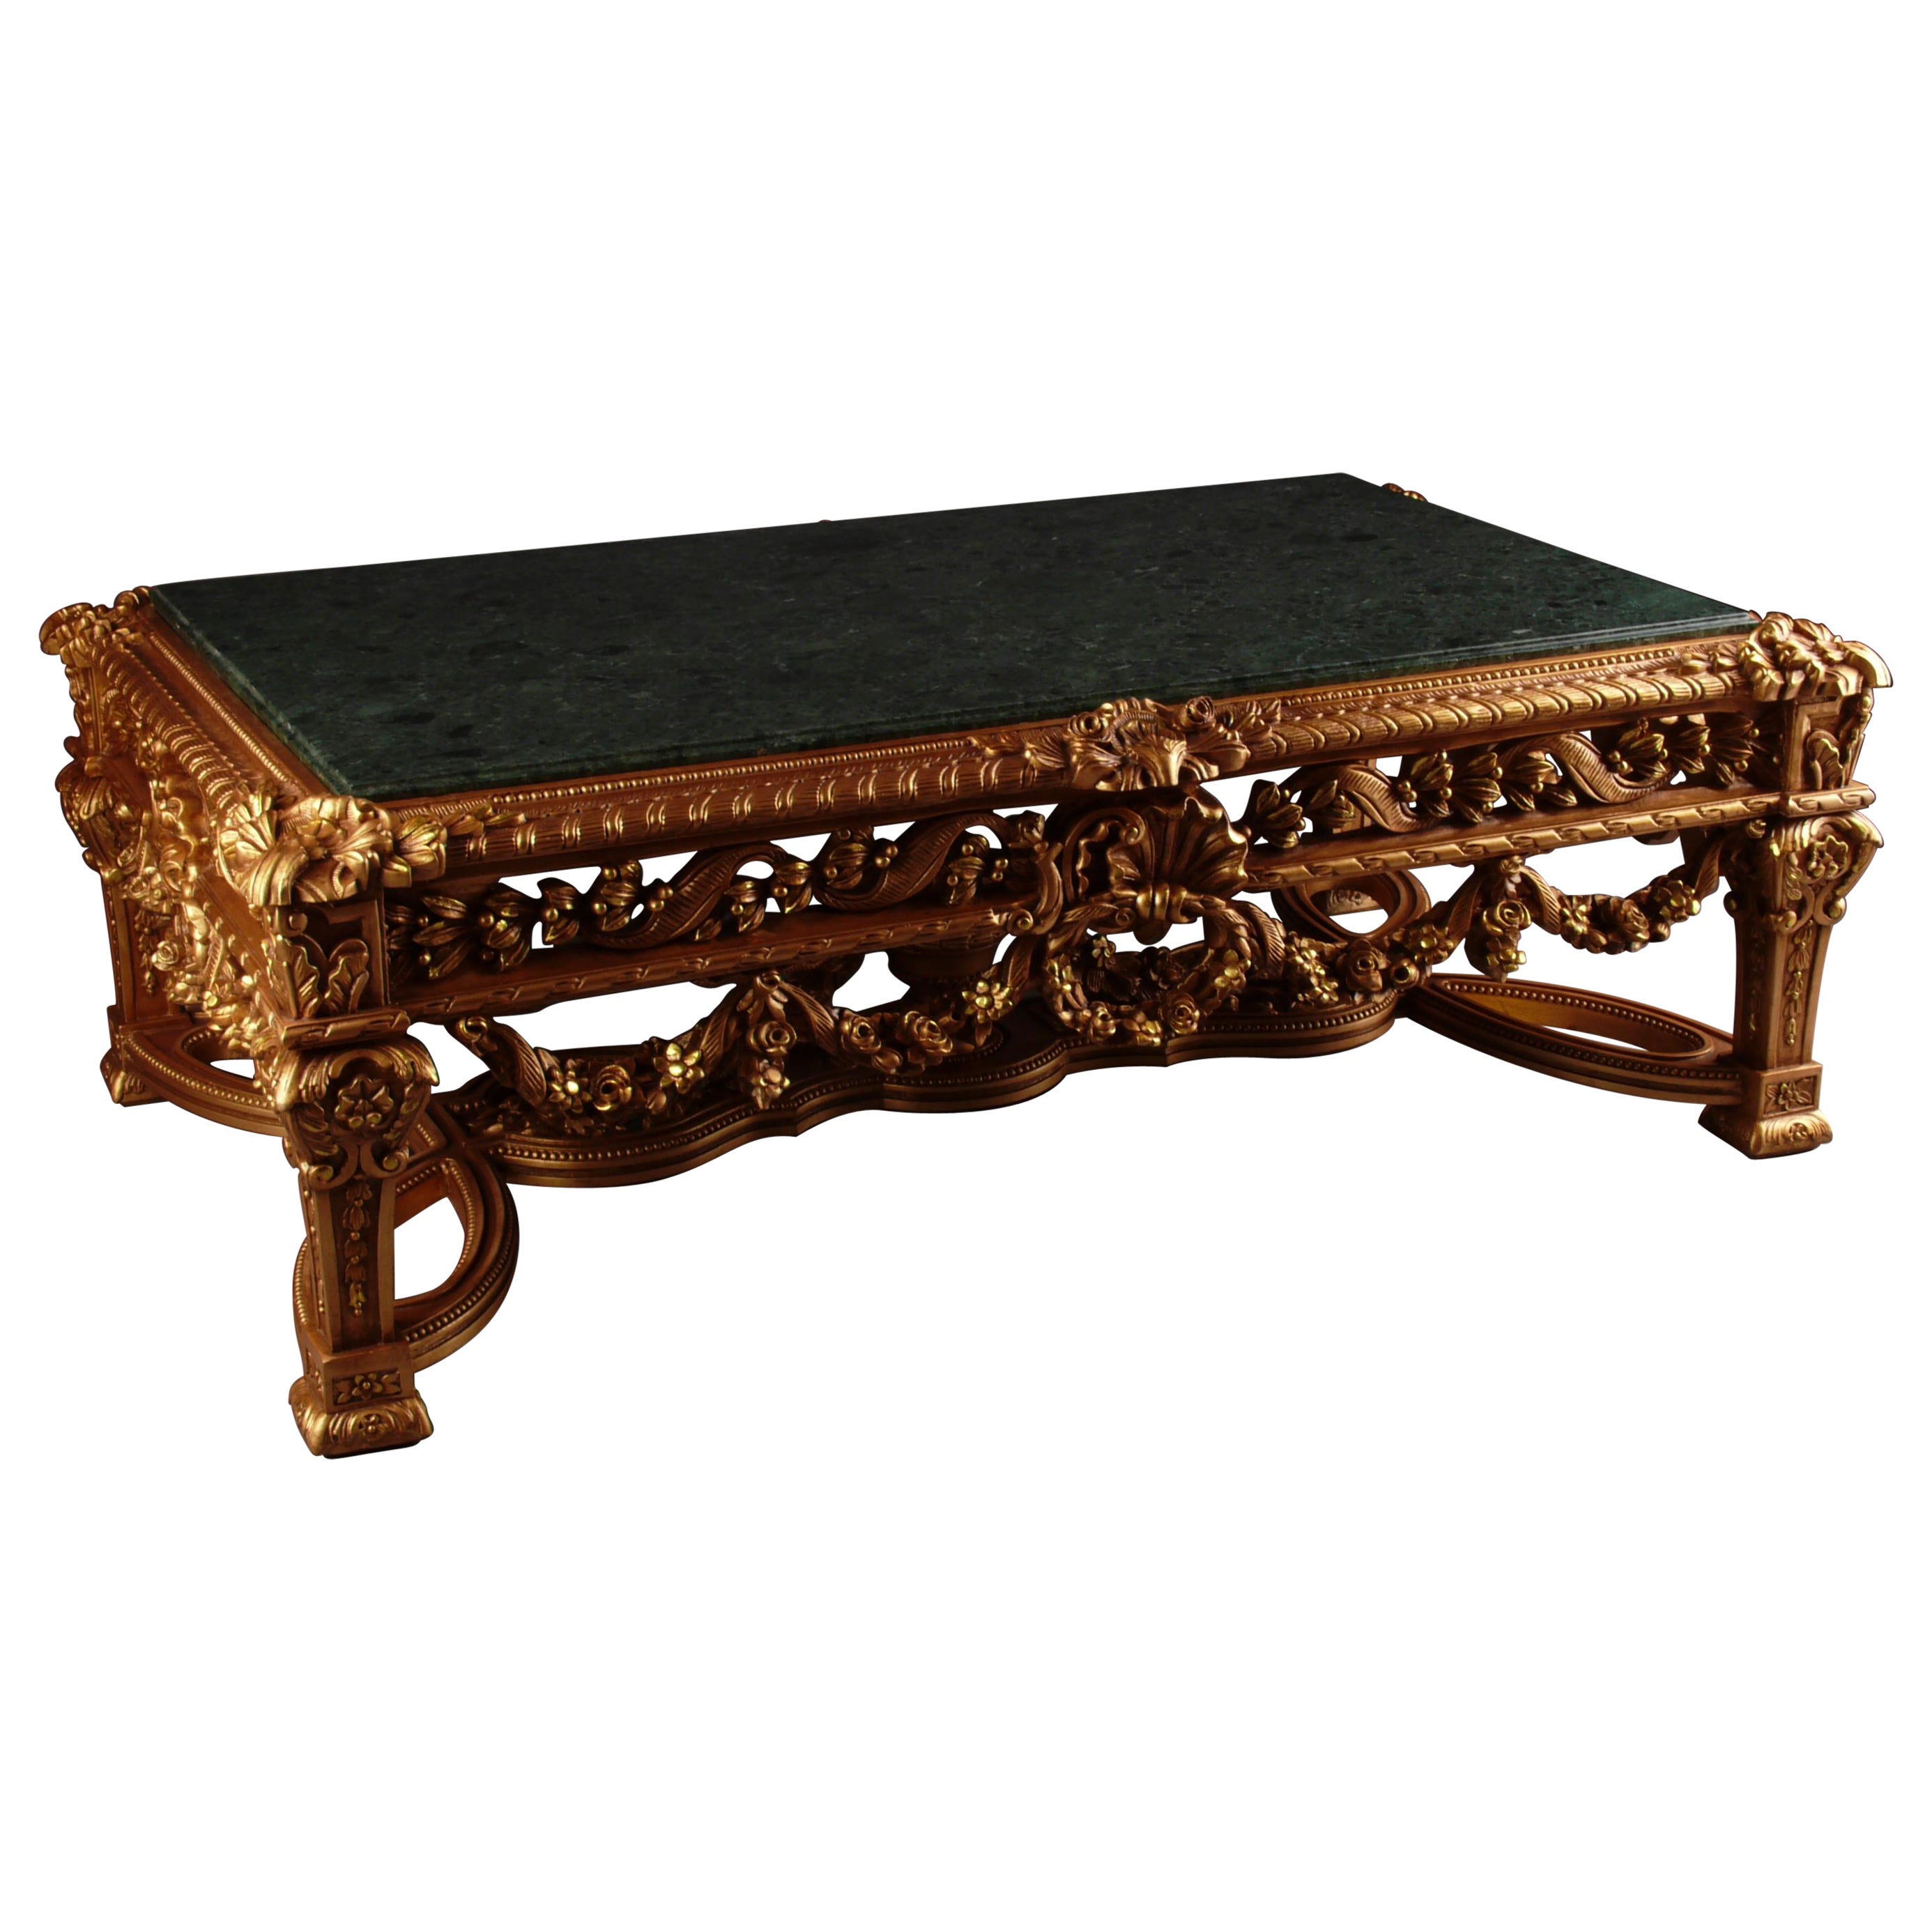 Table basse Pomp-Salon de style Louis XVI du 20ème siècle, bois de hêtre massif